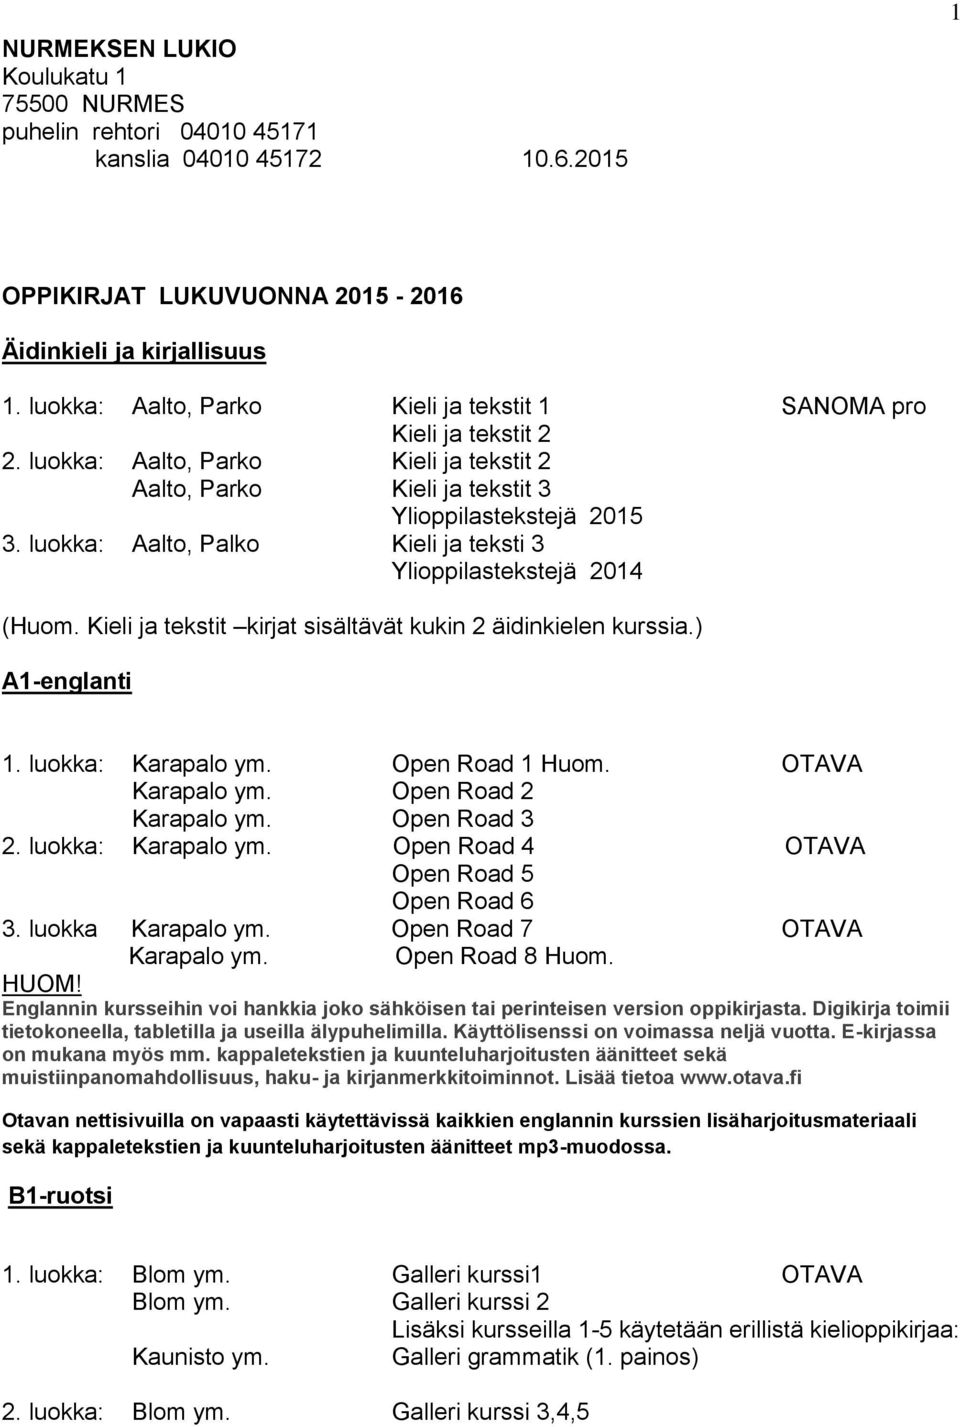 luokka: Aalto, Palko Kieli ja teksti 3 Ylioppilastekstejä 2014 (Huom. Kieli ja tekstit kirjat sisältävät kukin 2 äidinkielen kurssia.) A1-englanti 1. luokka: Karapalo ym. Open Road 1 Huom.